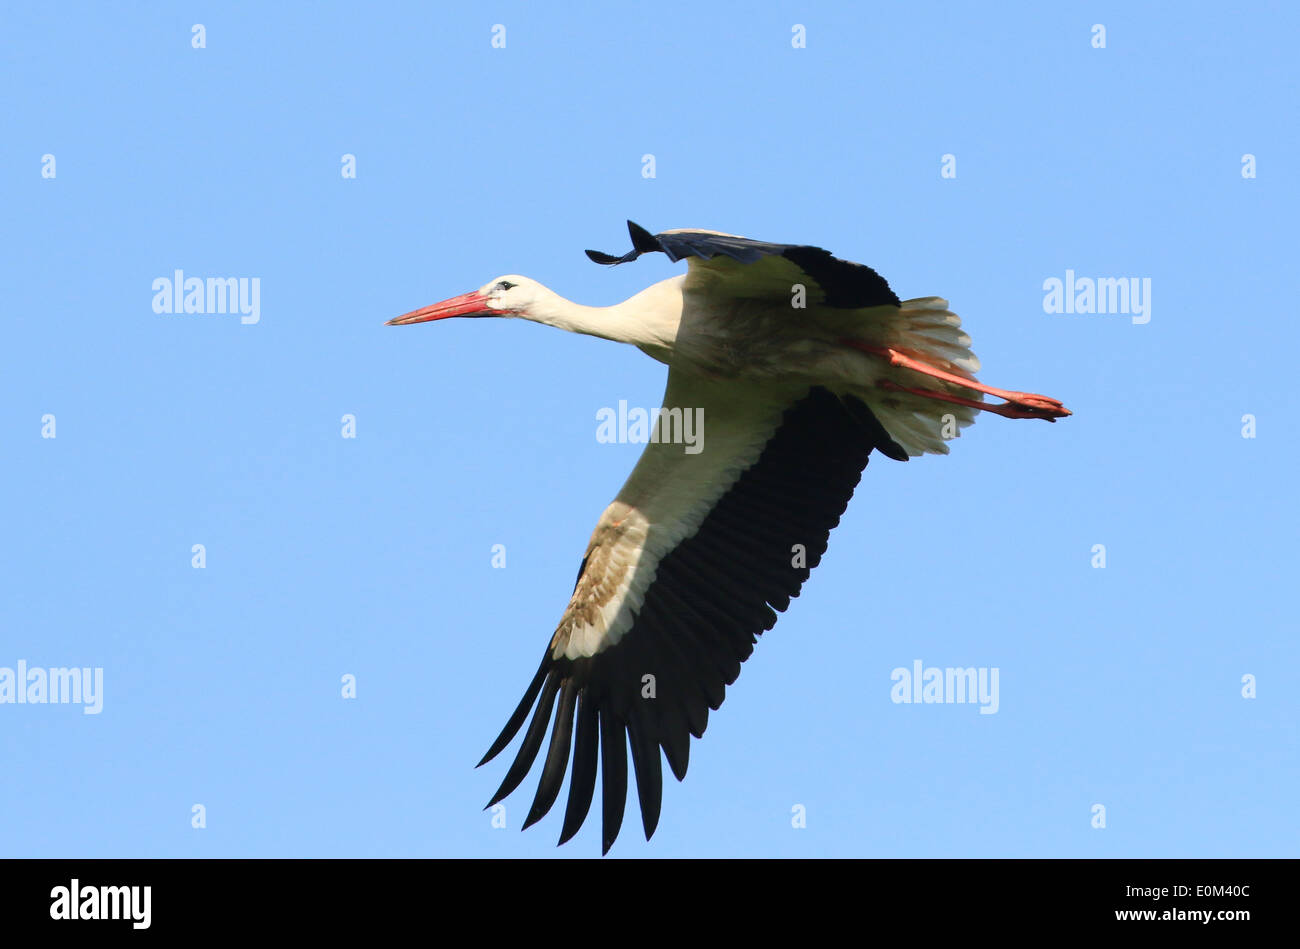 European White Stork (Ciconia ciconia) in flight Stock Photo